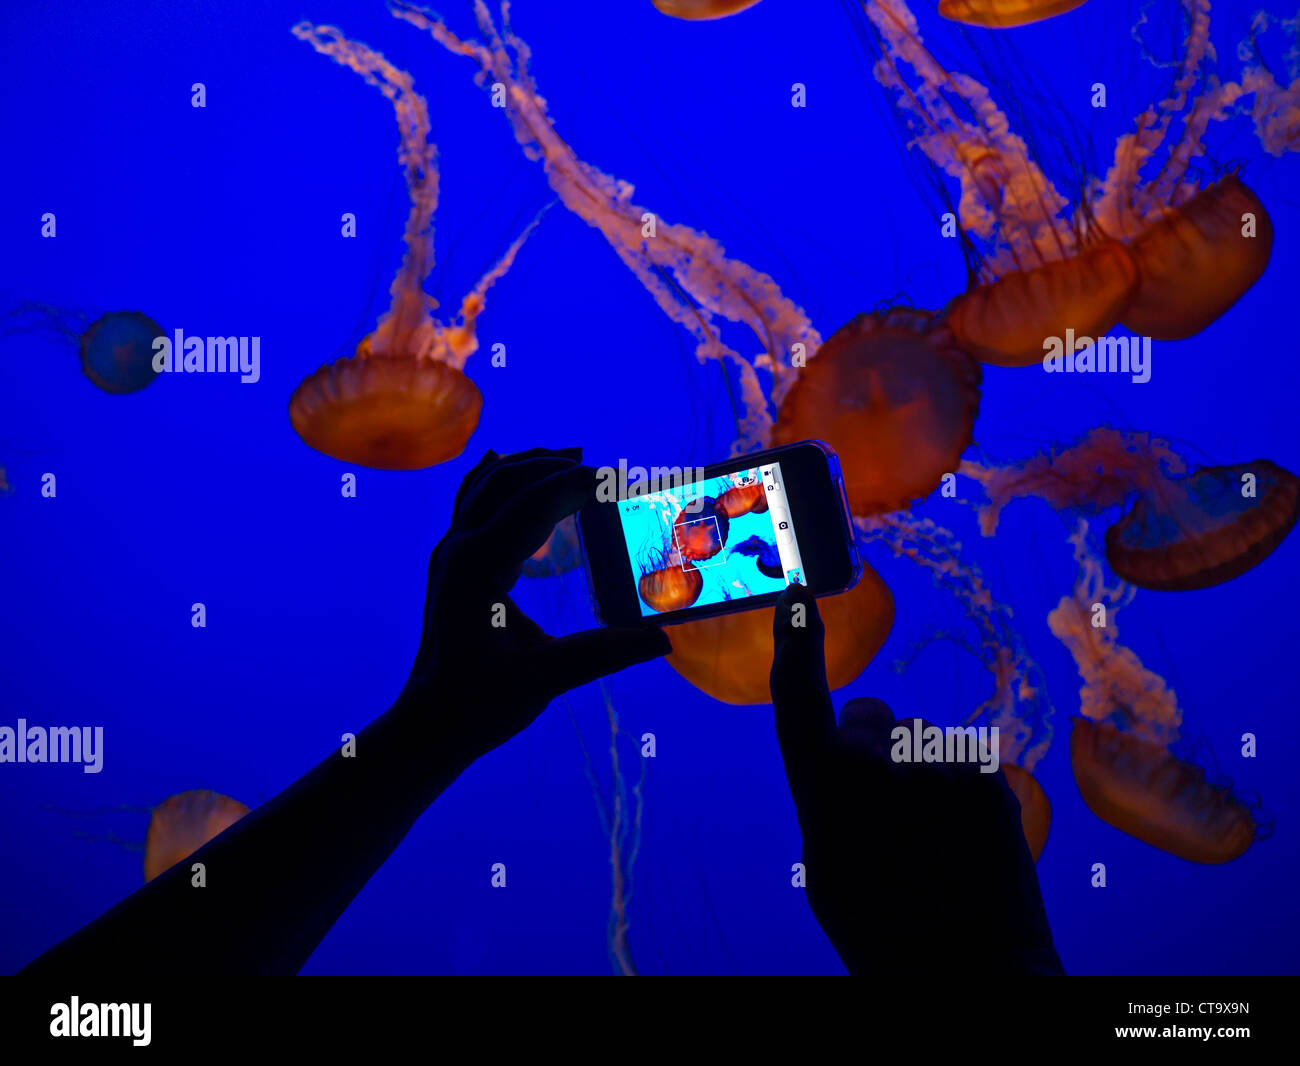 Hand holding Apple iPhone 4S'enregistrer des images de méduses dans la baie de Monterey Monterey Aquarium California USA Banque D'Images